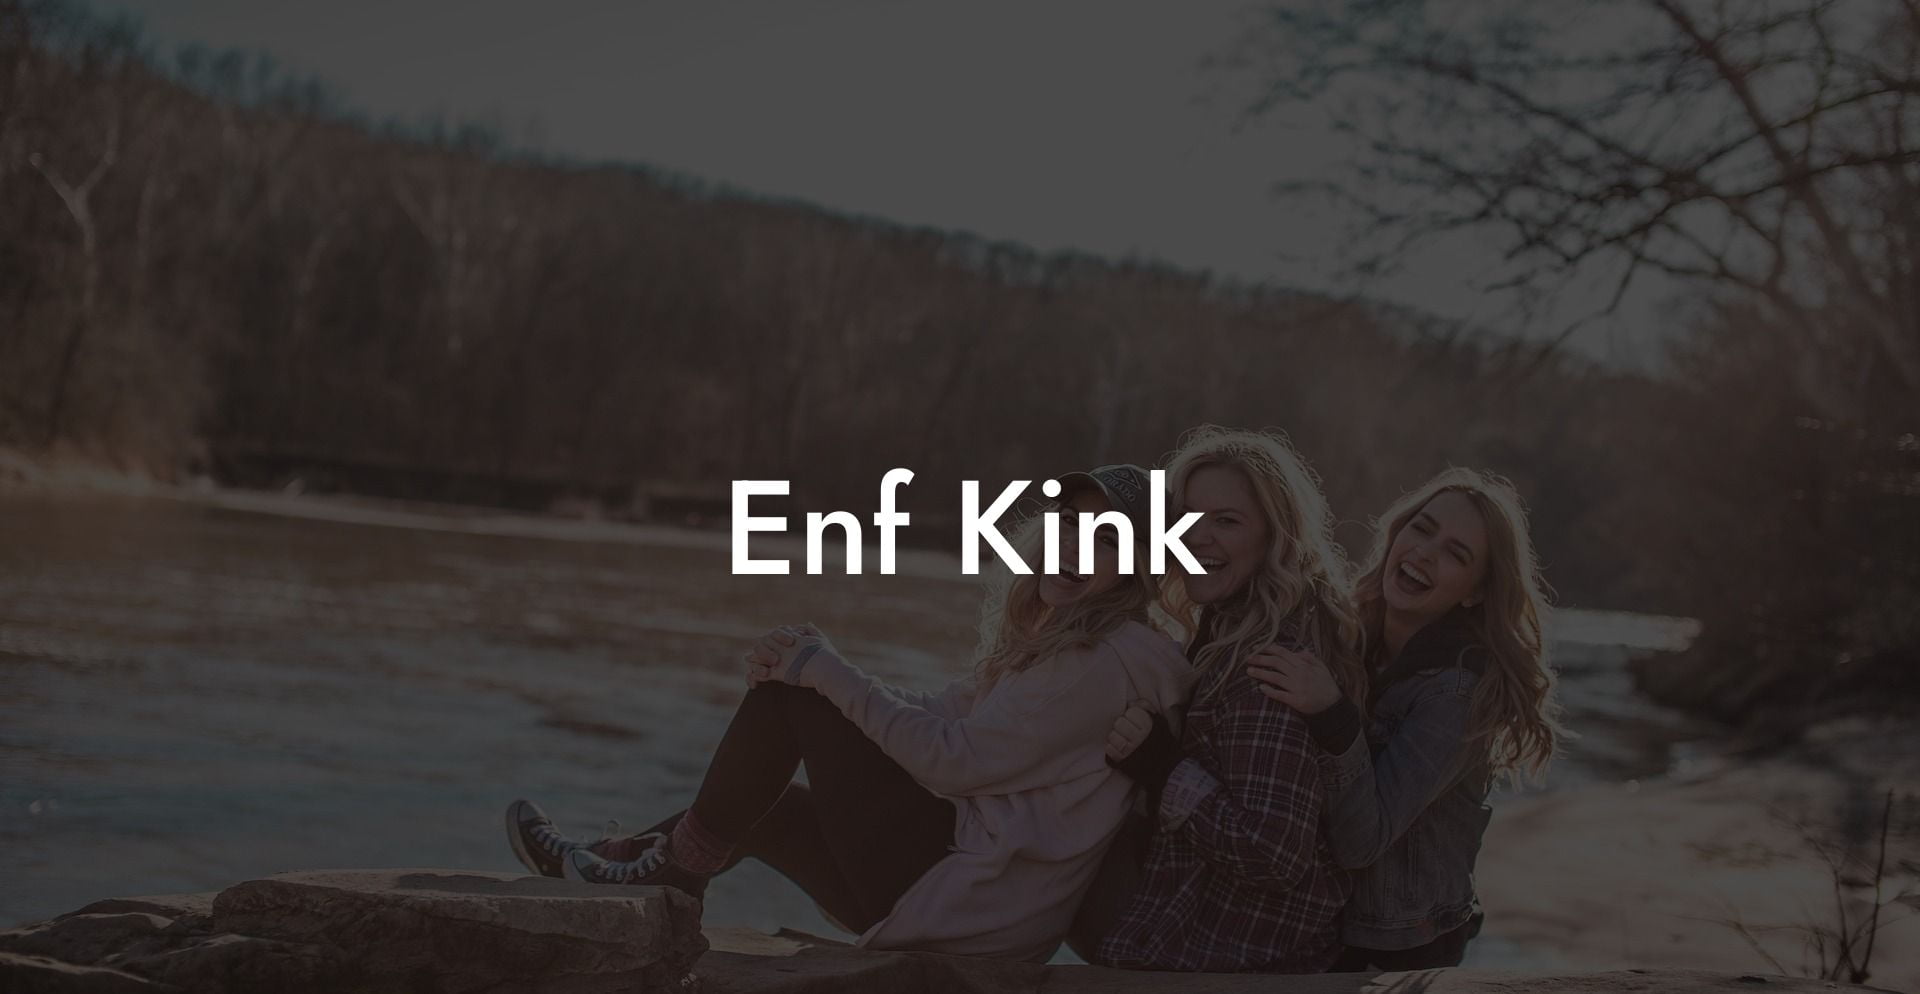 Enf Kink